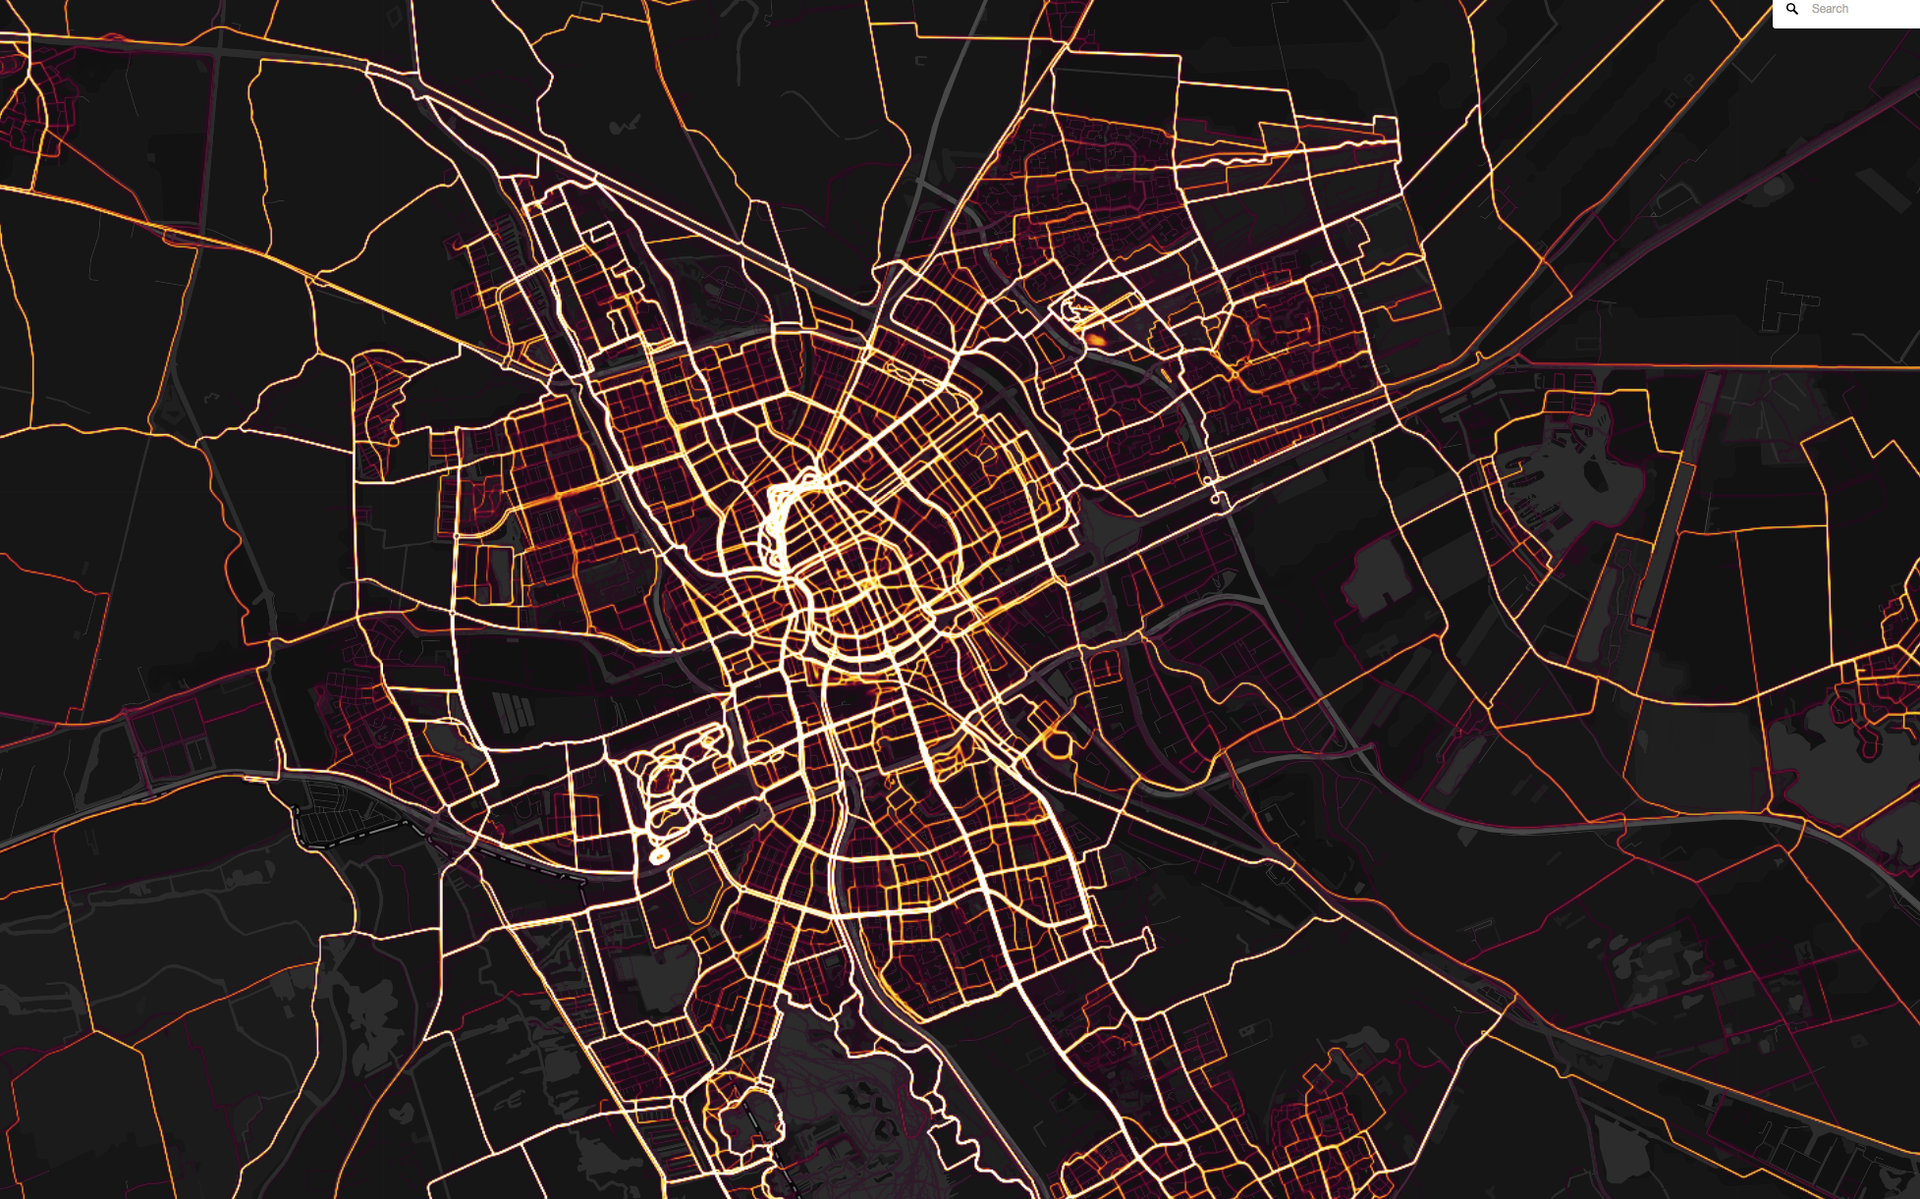 Groningen als Strava heatmap. Herken je de bekende plekken om te lopen? Foto: Strava